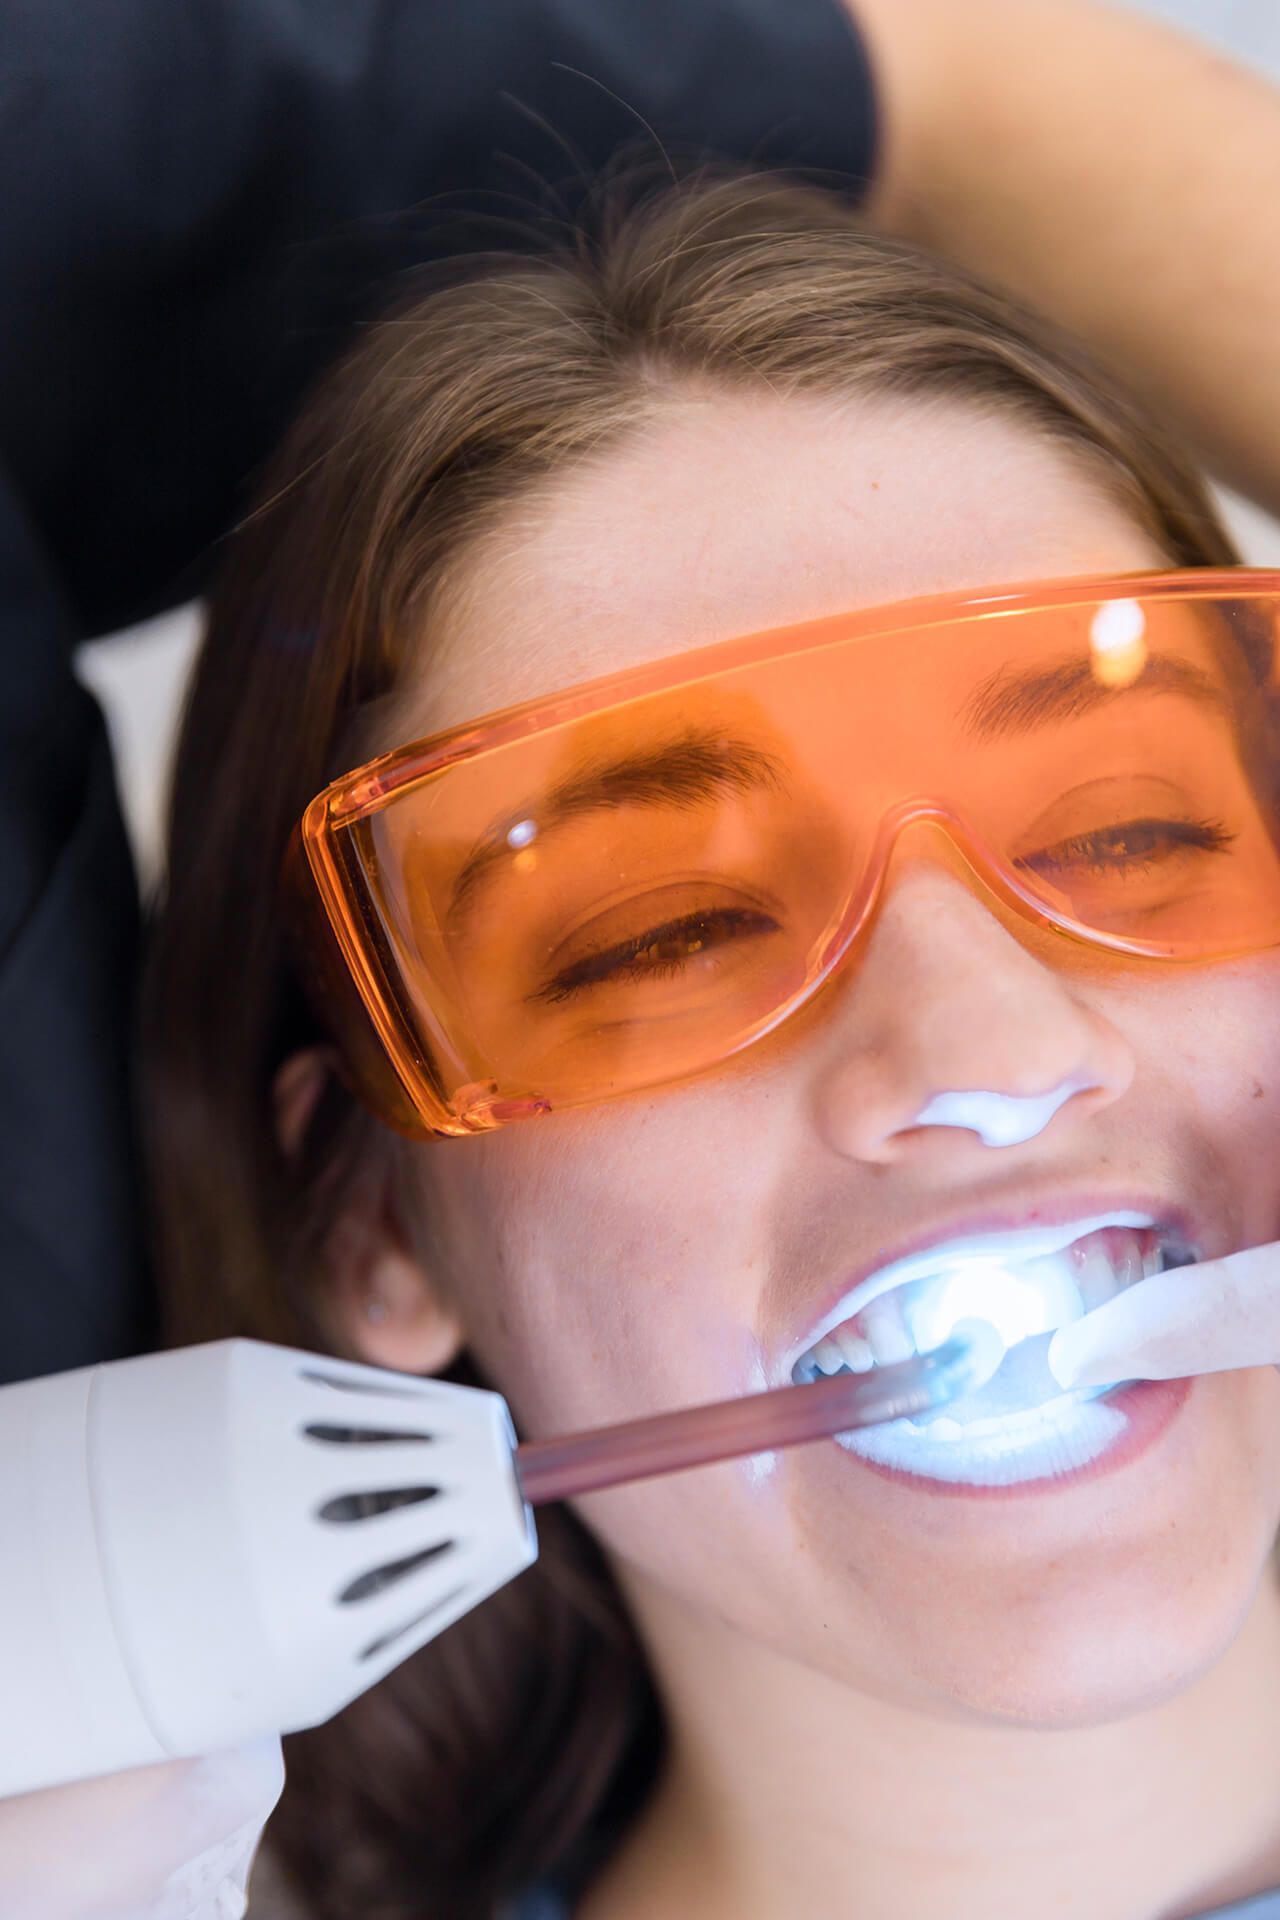 le visage d'une patiente subissant un traitement de blanchiment des dents au laser